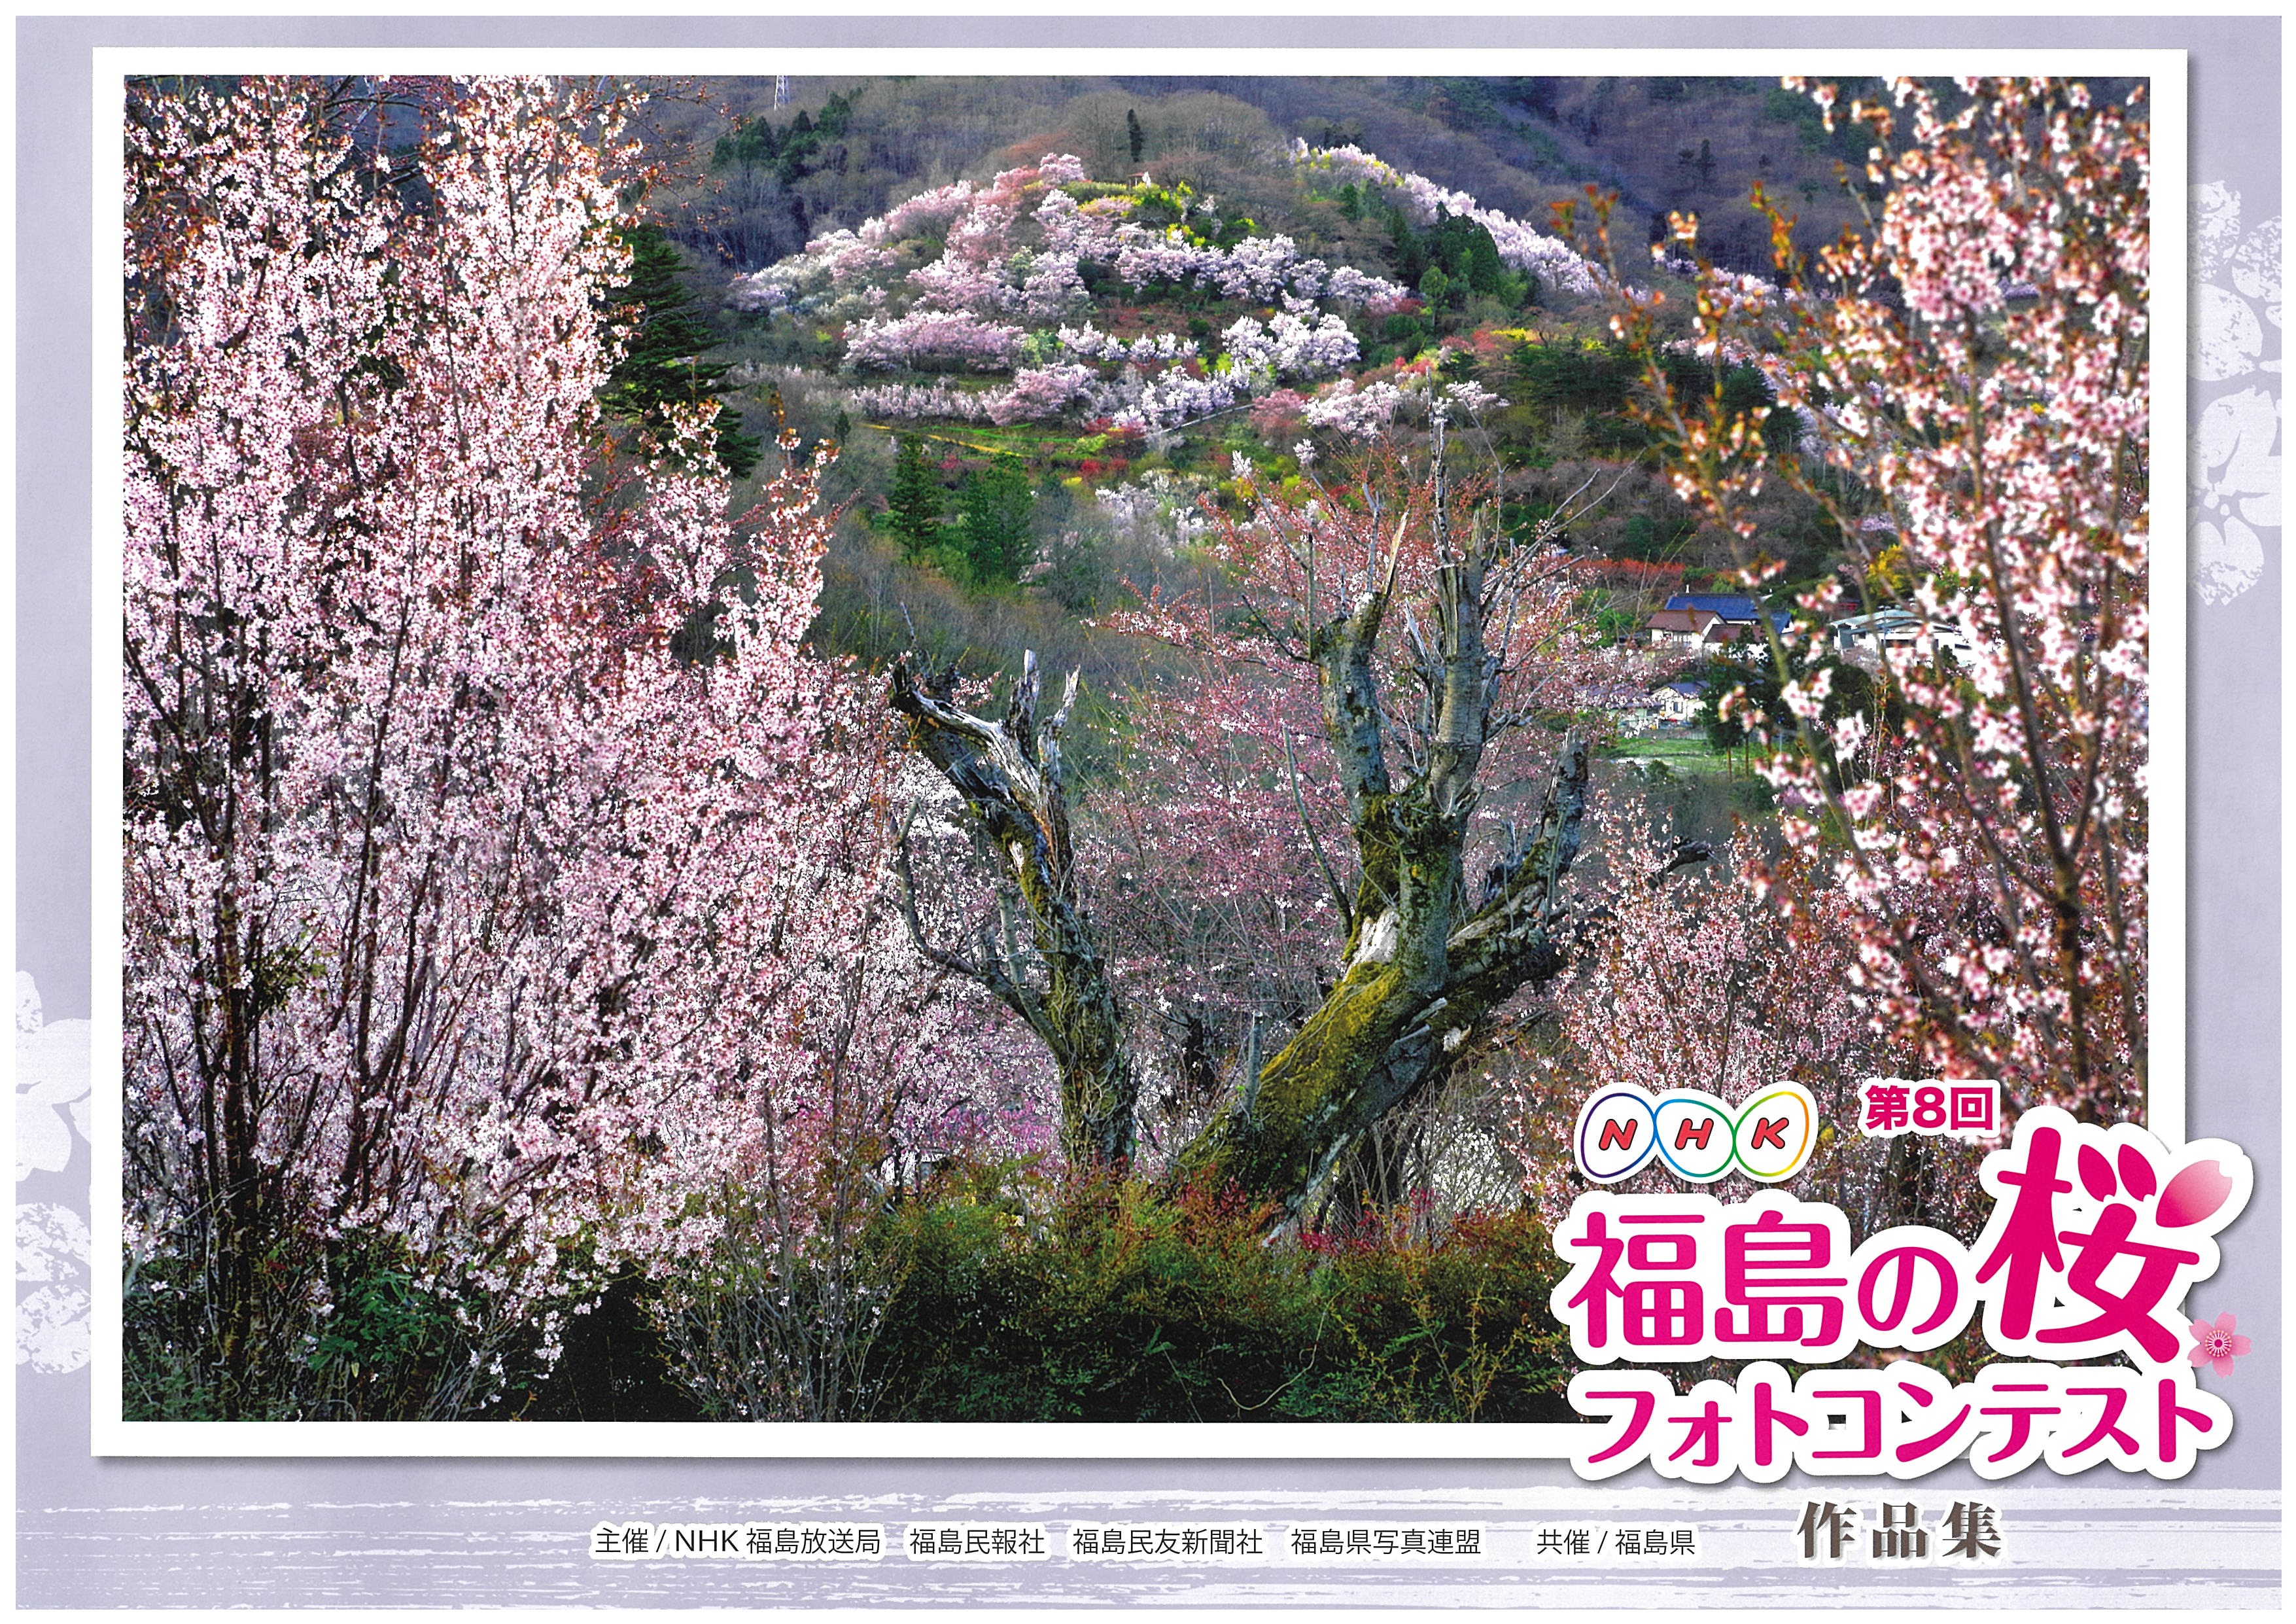 第8回 Nhk福島の桜フォトコンテスト 入選作品展示中 一般社団法人 南相馬観光協会